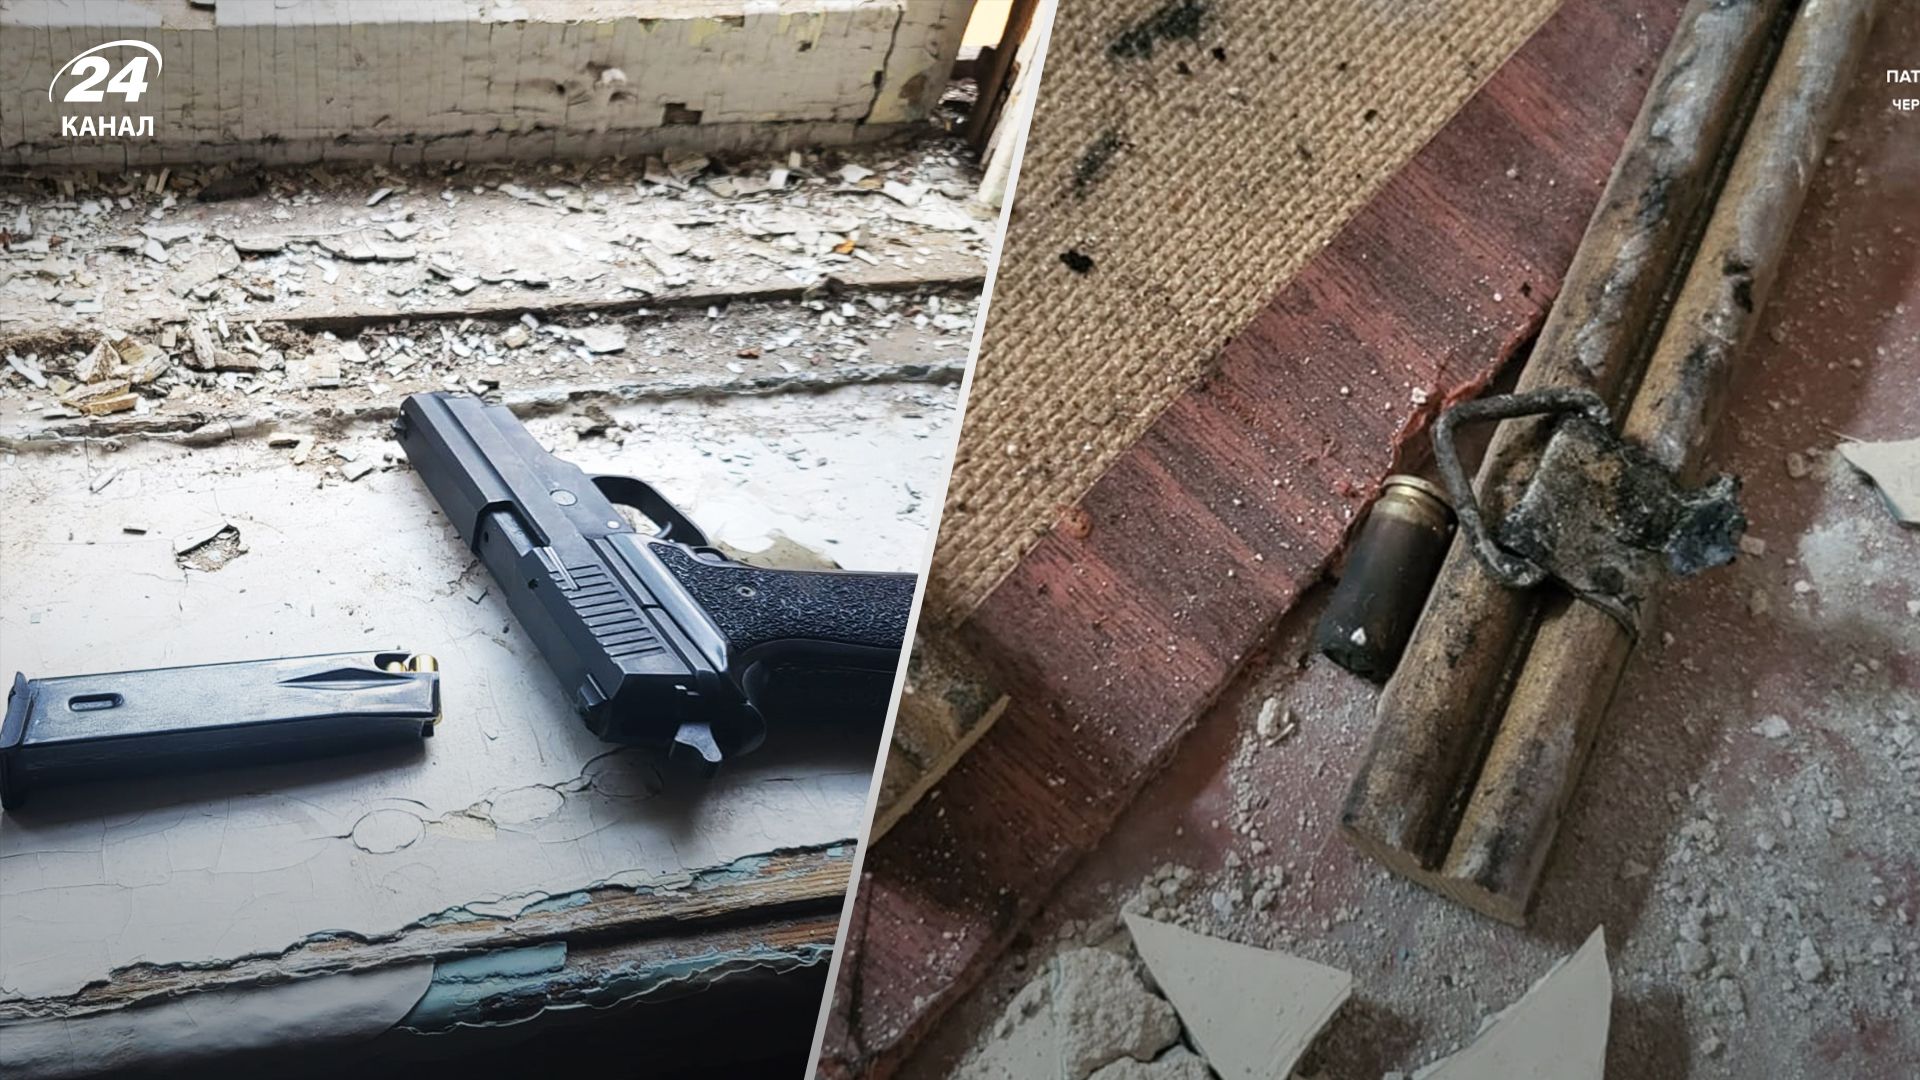 В Чернигове пьяный мужчина угрожал оружием и ударил несовершеннолетнего - 24 Канал